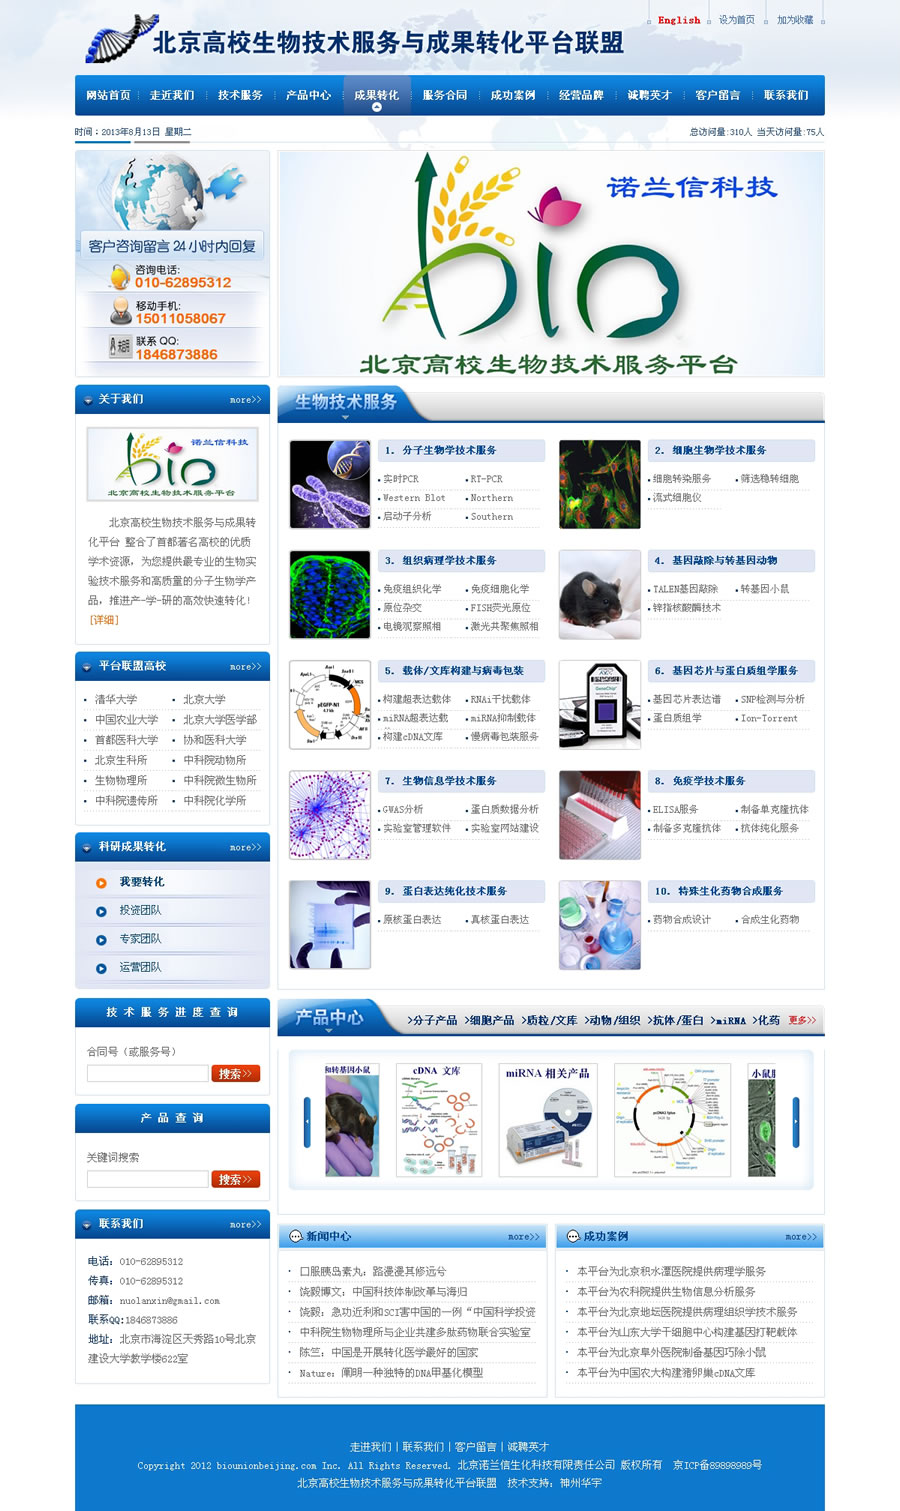 北京高校生物技术服务与成果转化平台联盟